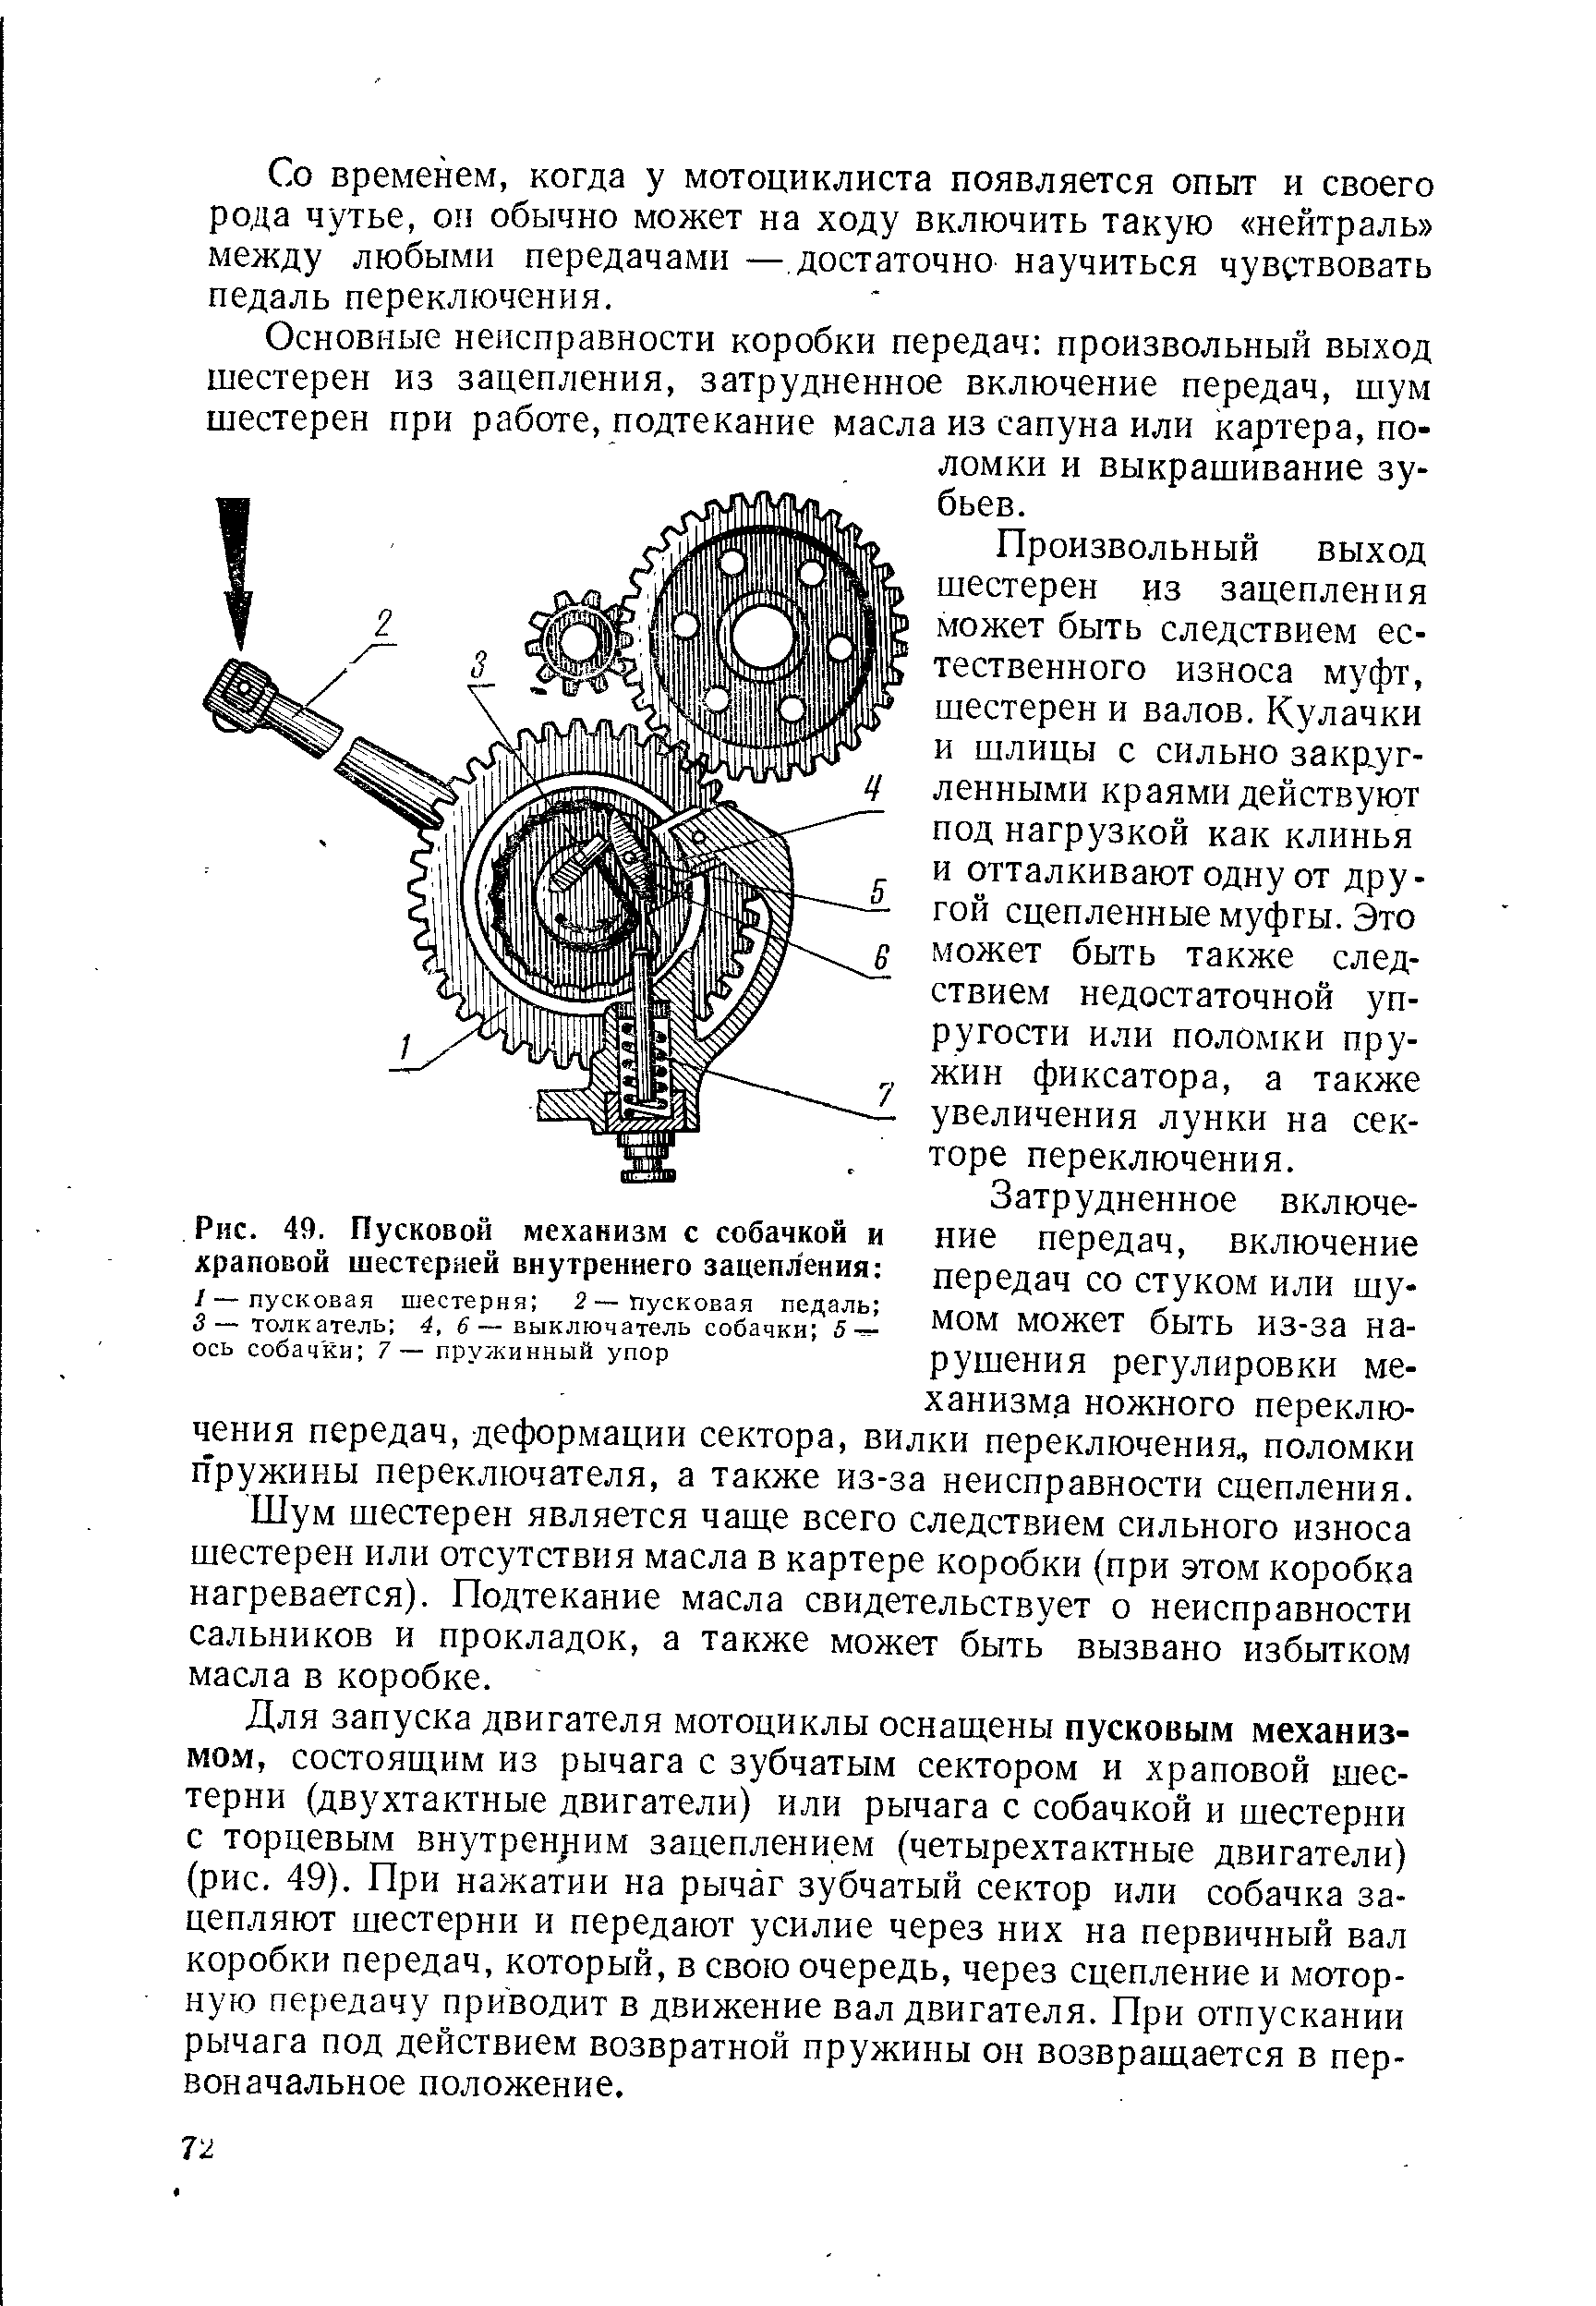 Рис. 49. Пусковой механизм с собачкой и храповой шестерней внутреннего зацепления 
